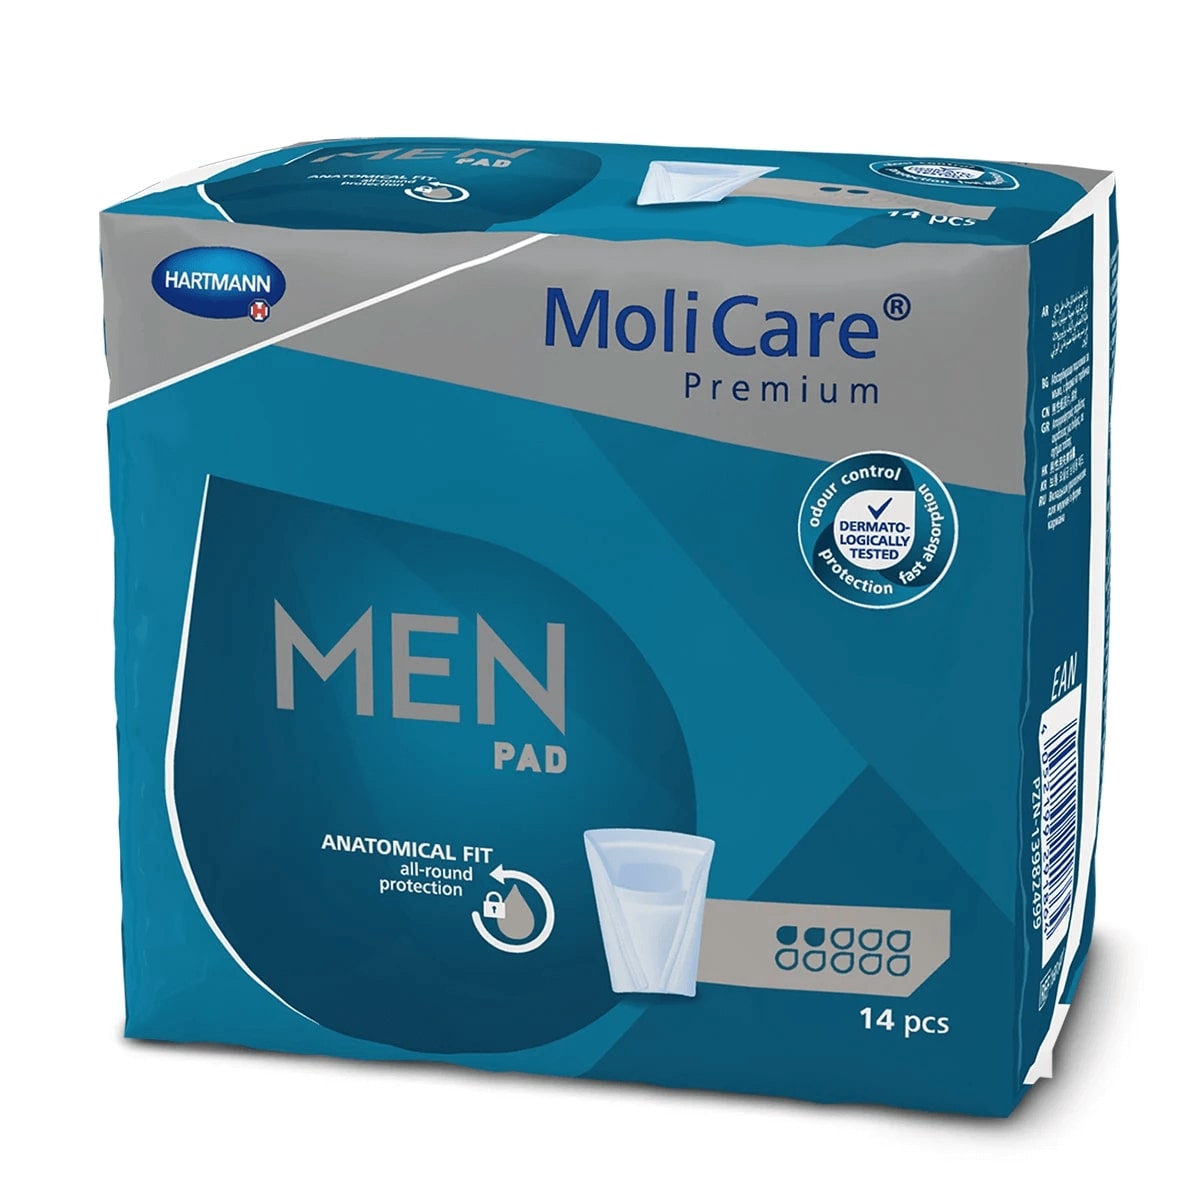 MoliCare® Premium MEN PAD